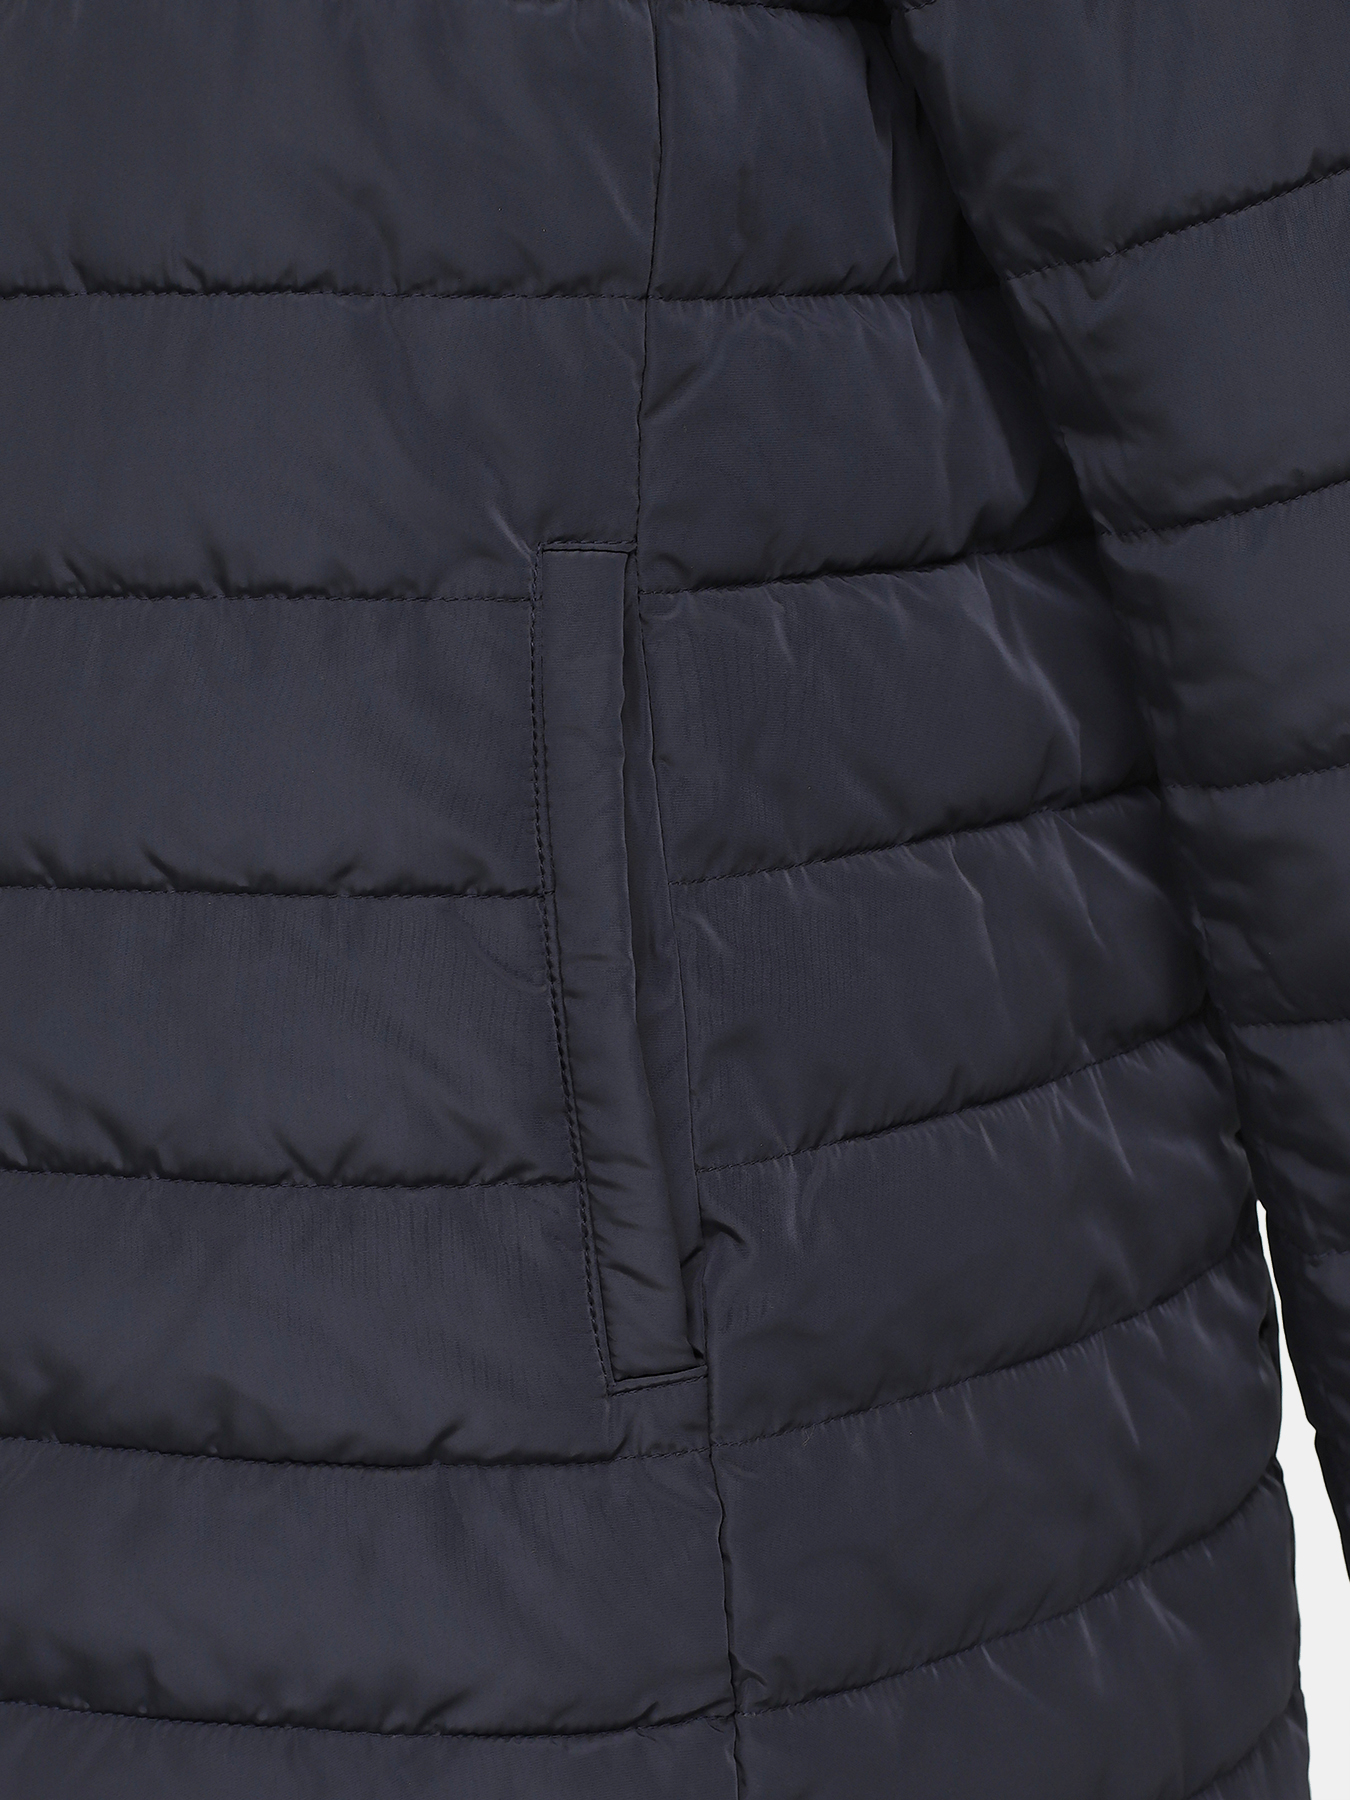 Двусторонняя куртка Alessandro Manzoni Purpur 405294-241, цвет темно-синий, размер 46-48 - фото 5